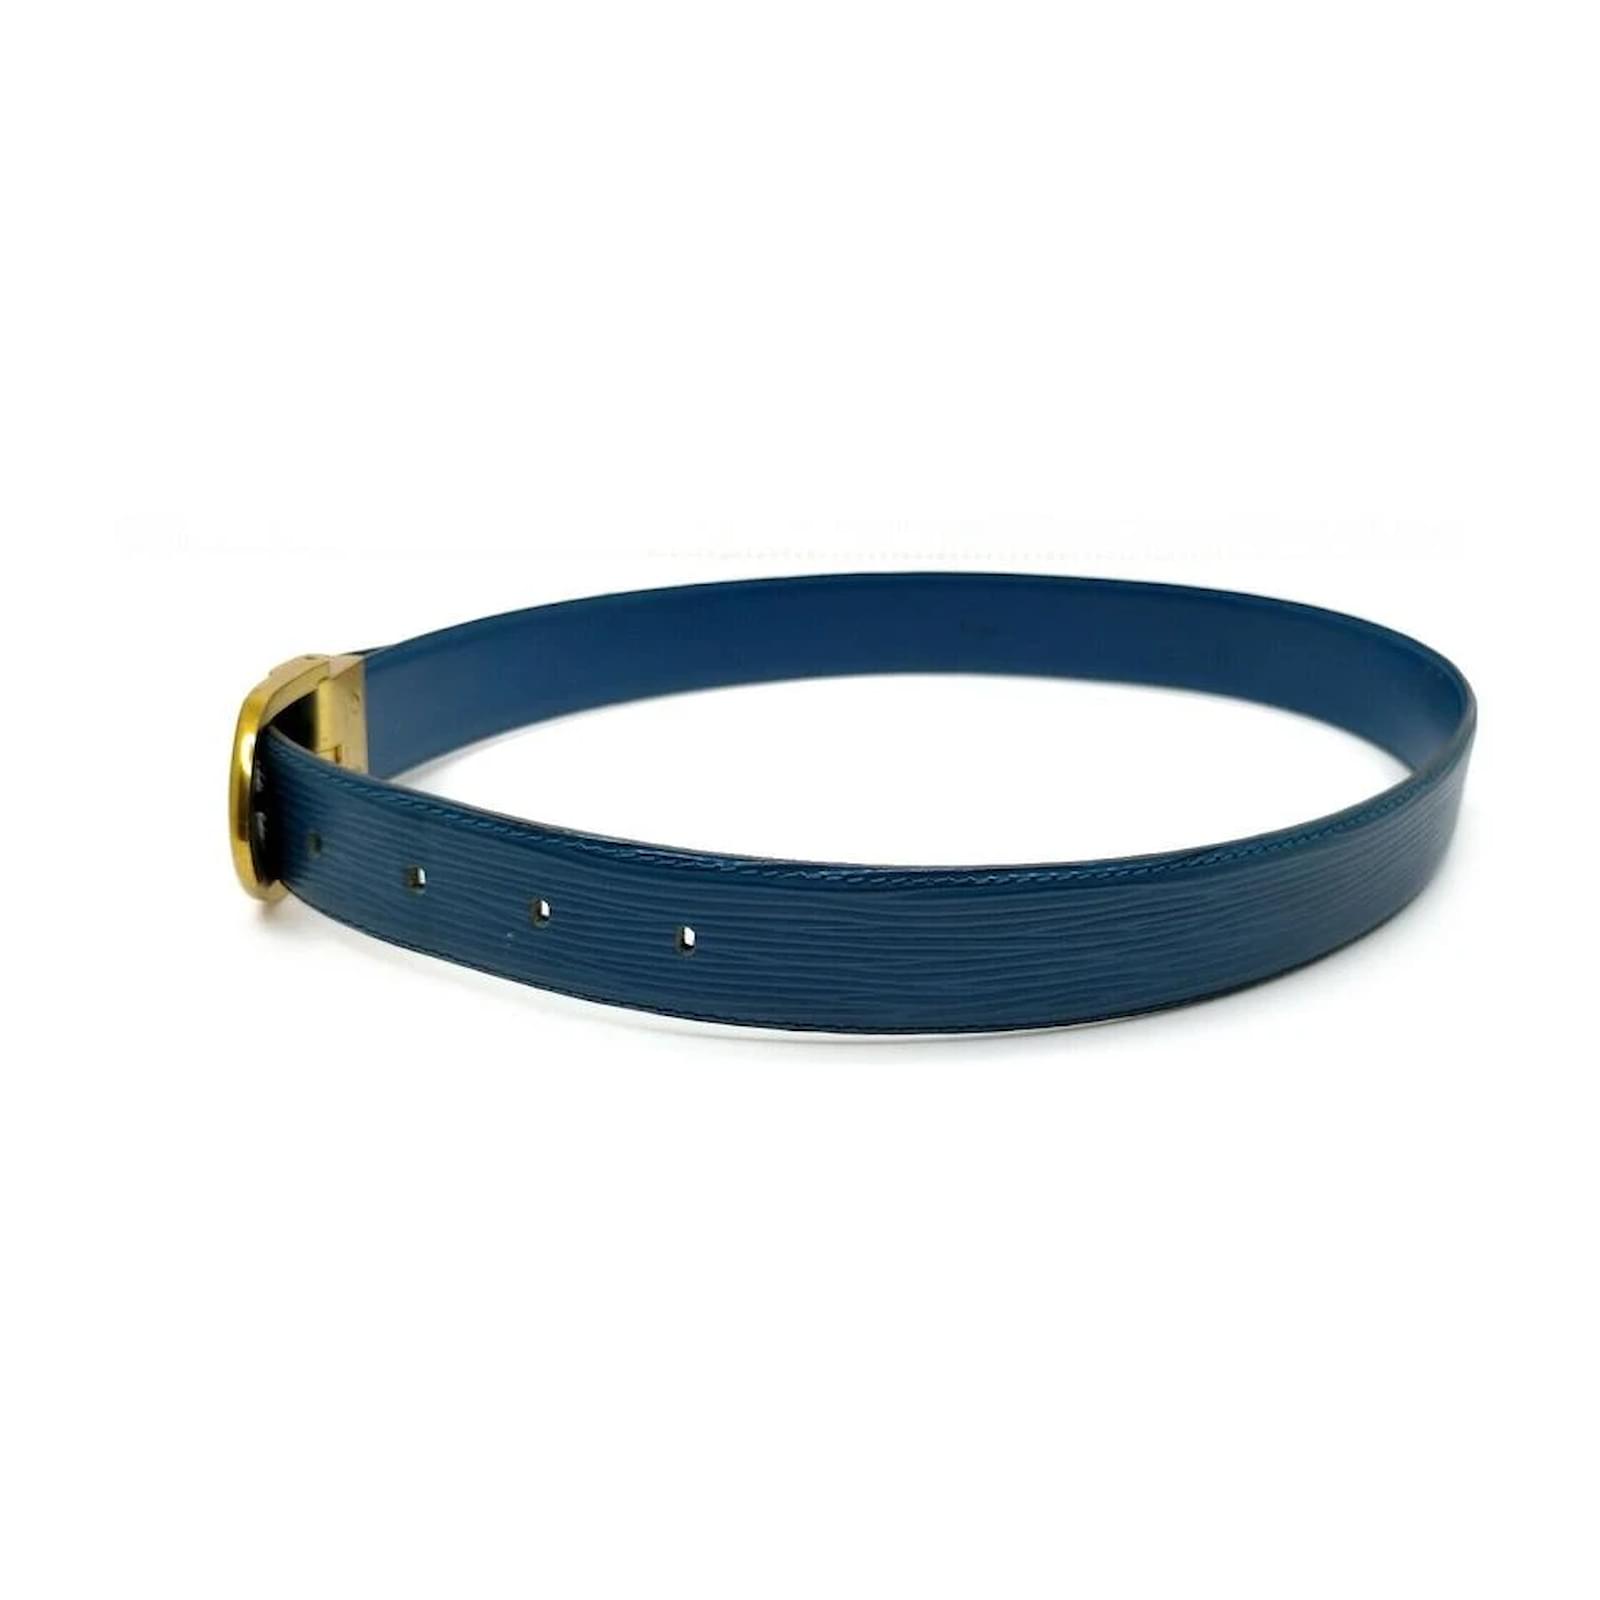 Cinture Louis vuitton in Pelle Blu taglia 95 cm - 28603481